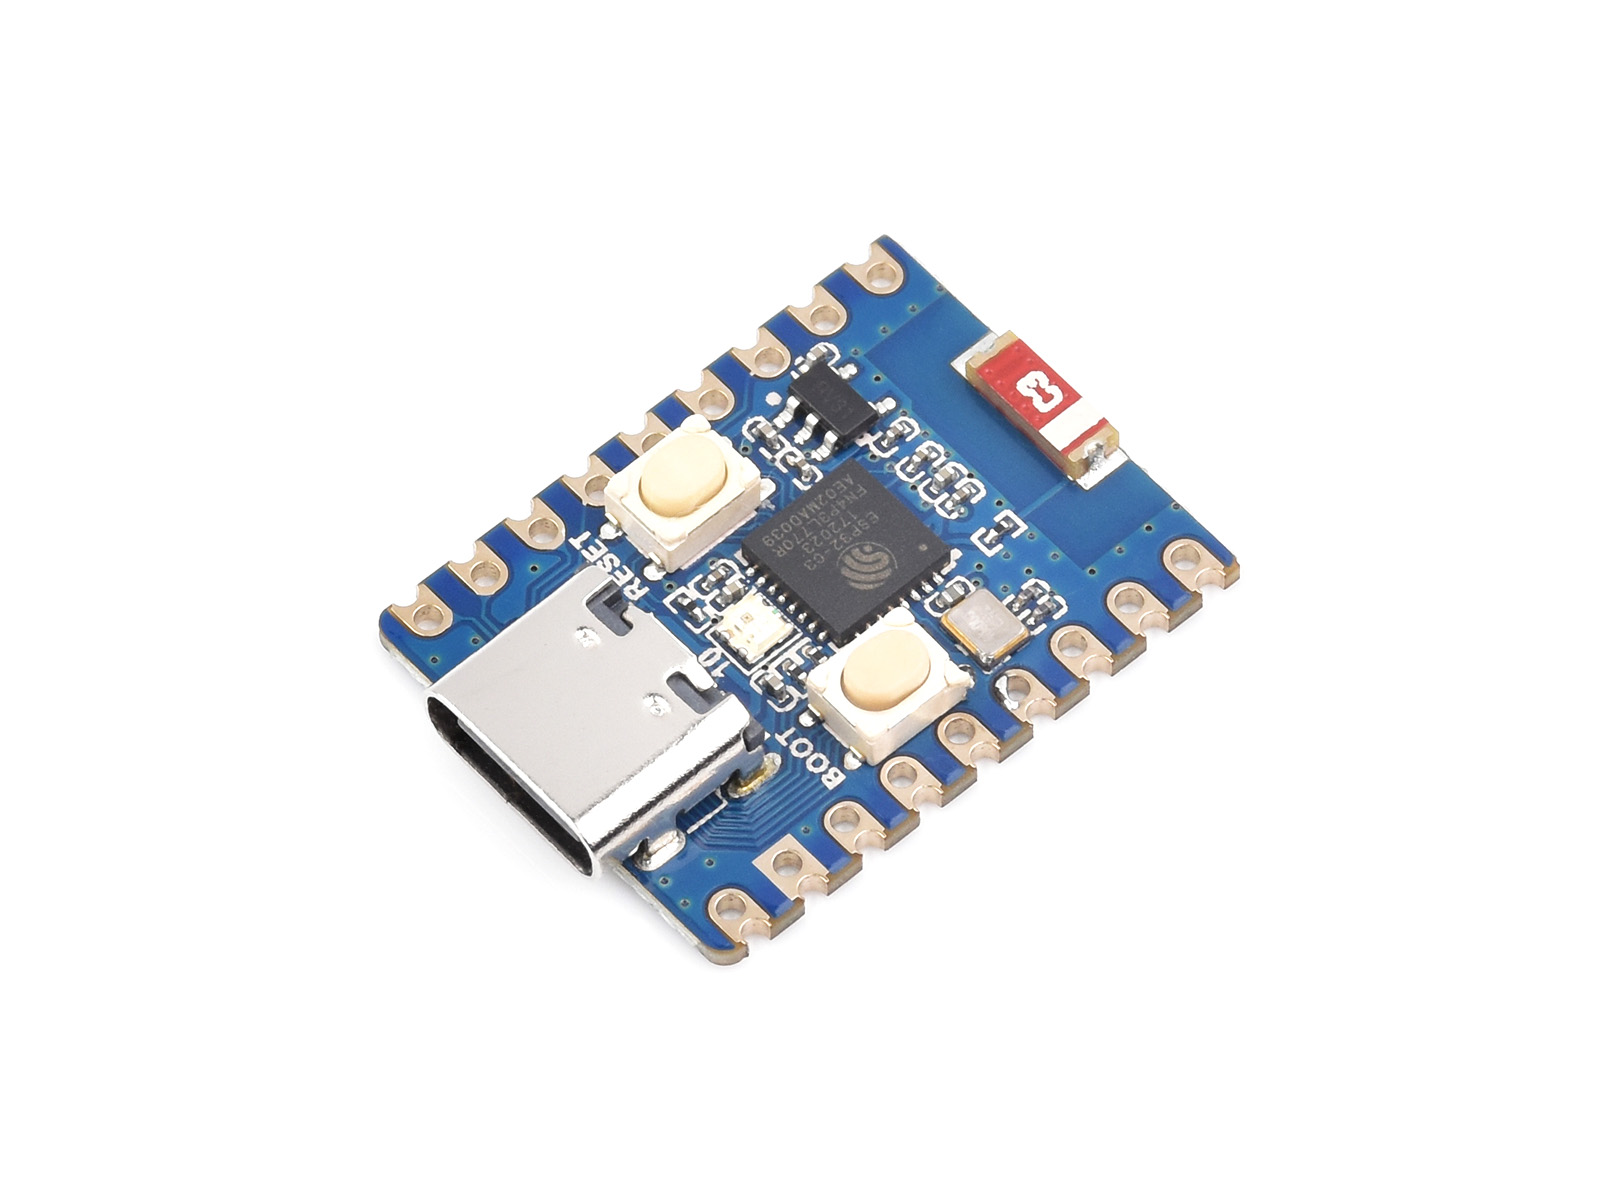 ESP32-C3-DevKitM-1 ESP32 C3 Development Board ESP32-C3-MINI-1 WiFi+BT BLE  Module ESP32-C3FN4 Core 4MB Flash for Arduino